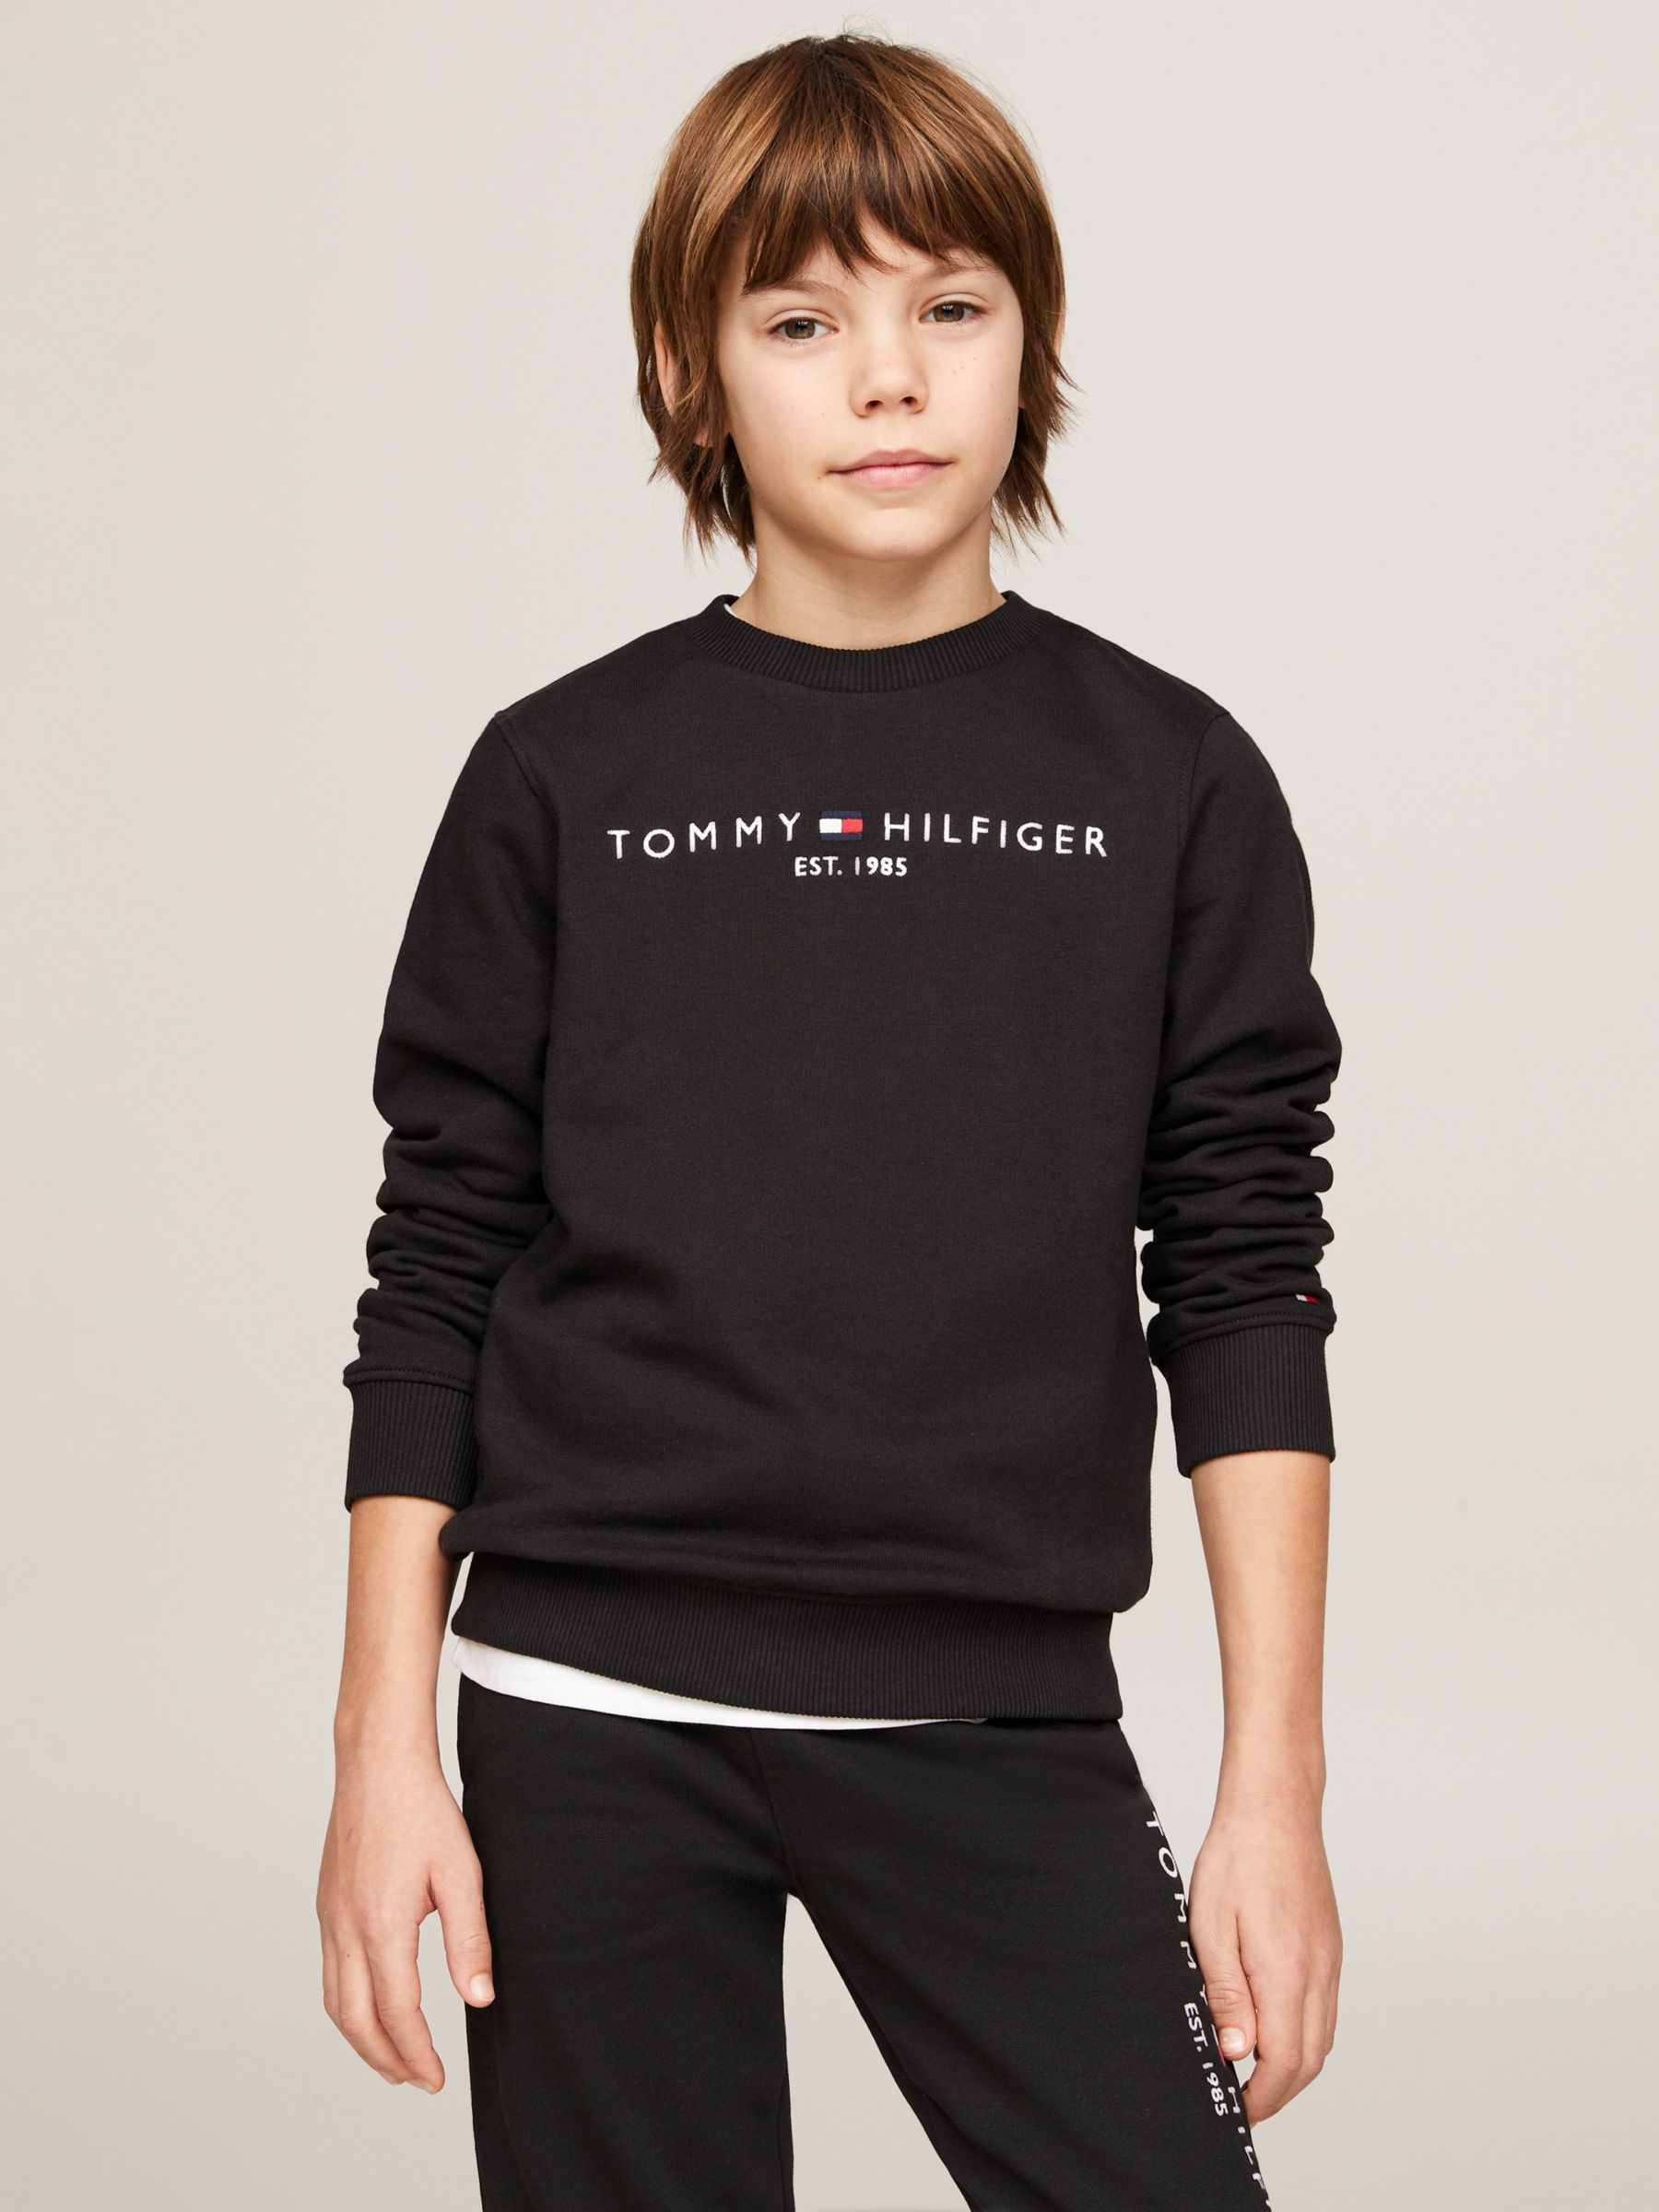 Ødelæggelse lokal Sommetider Tommy Hilfiger Kids' Essential Organic Cotton Logo Sweatshirt, Black at  John Lewis & Partners